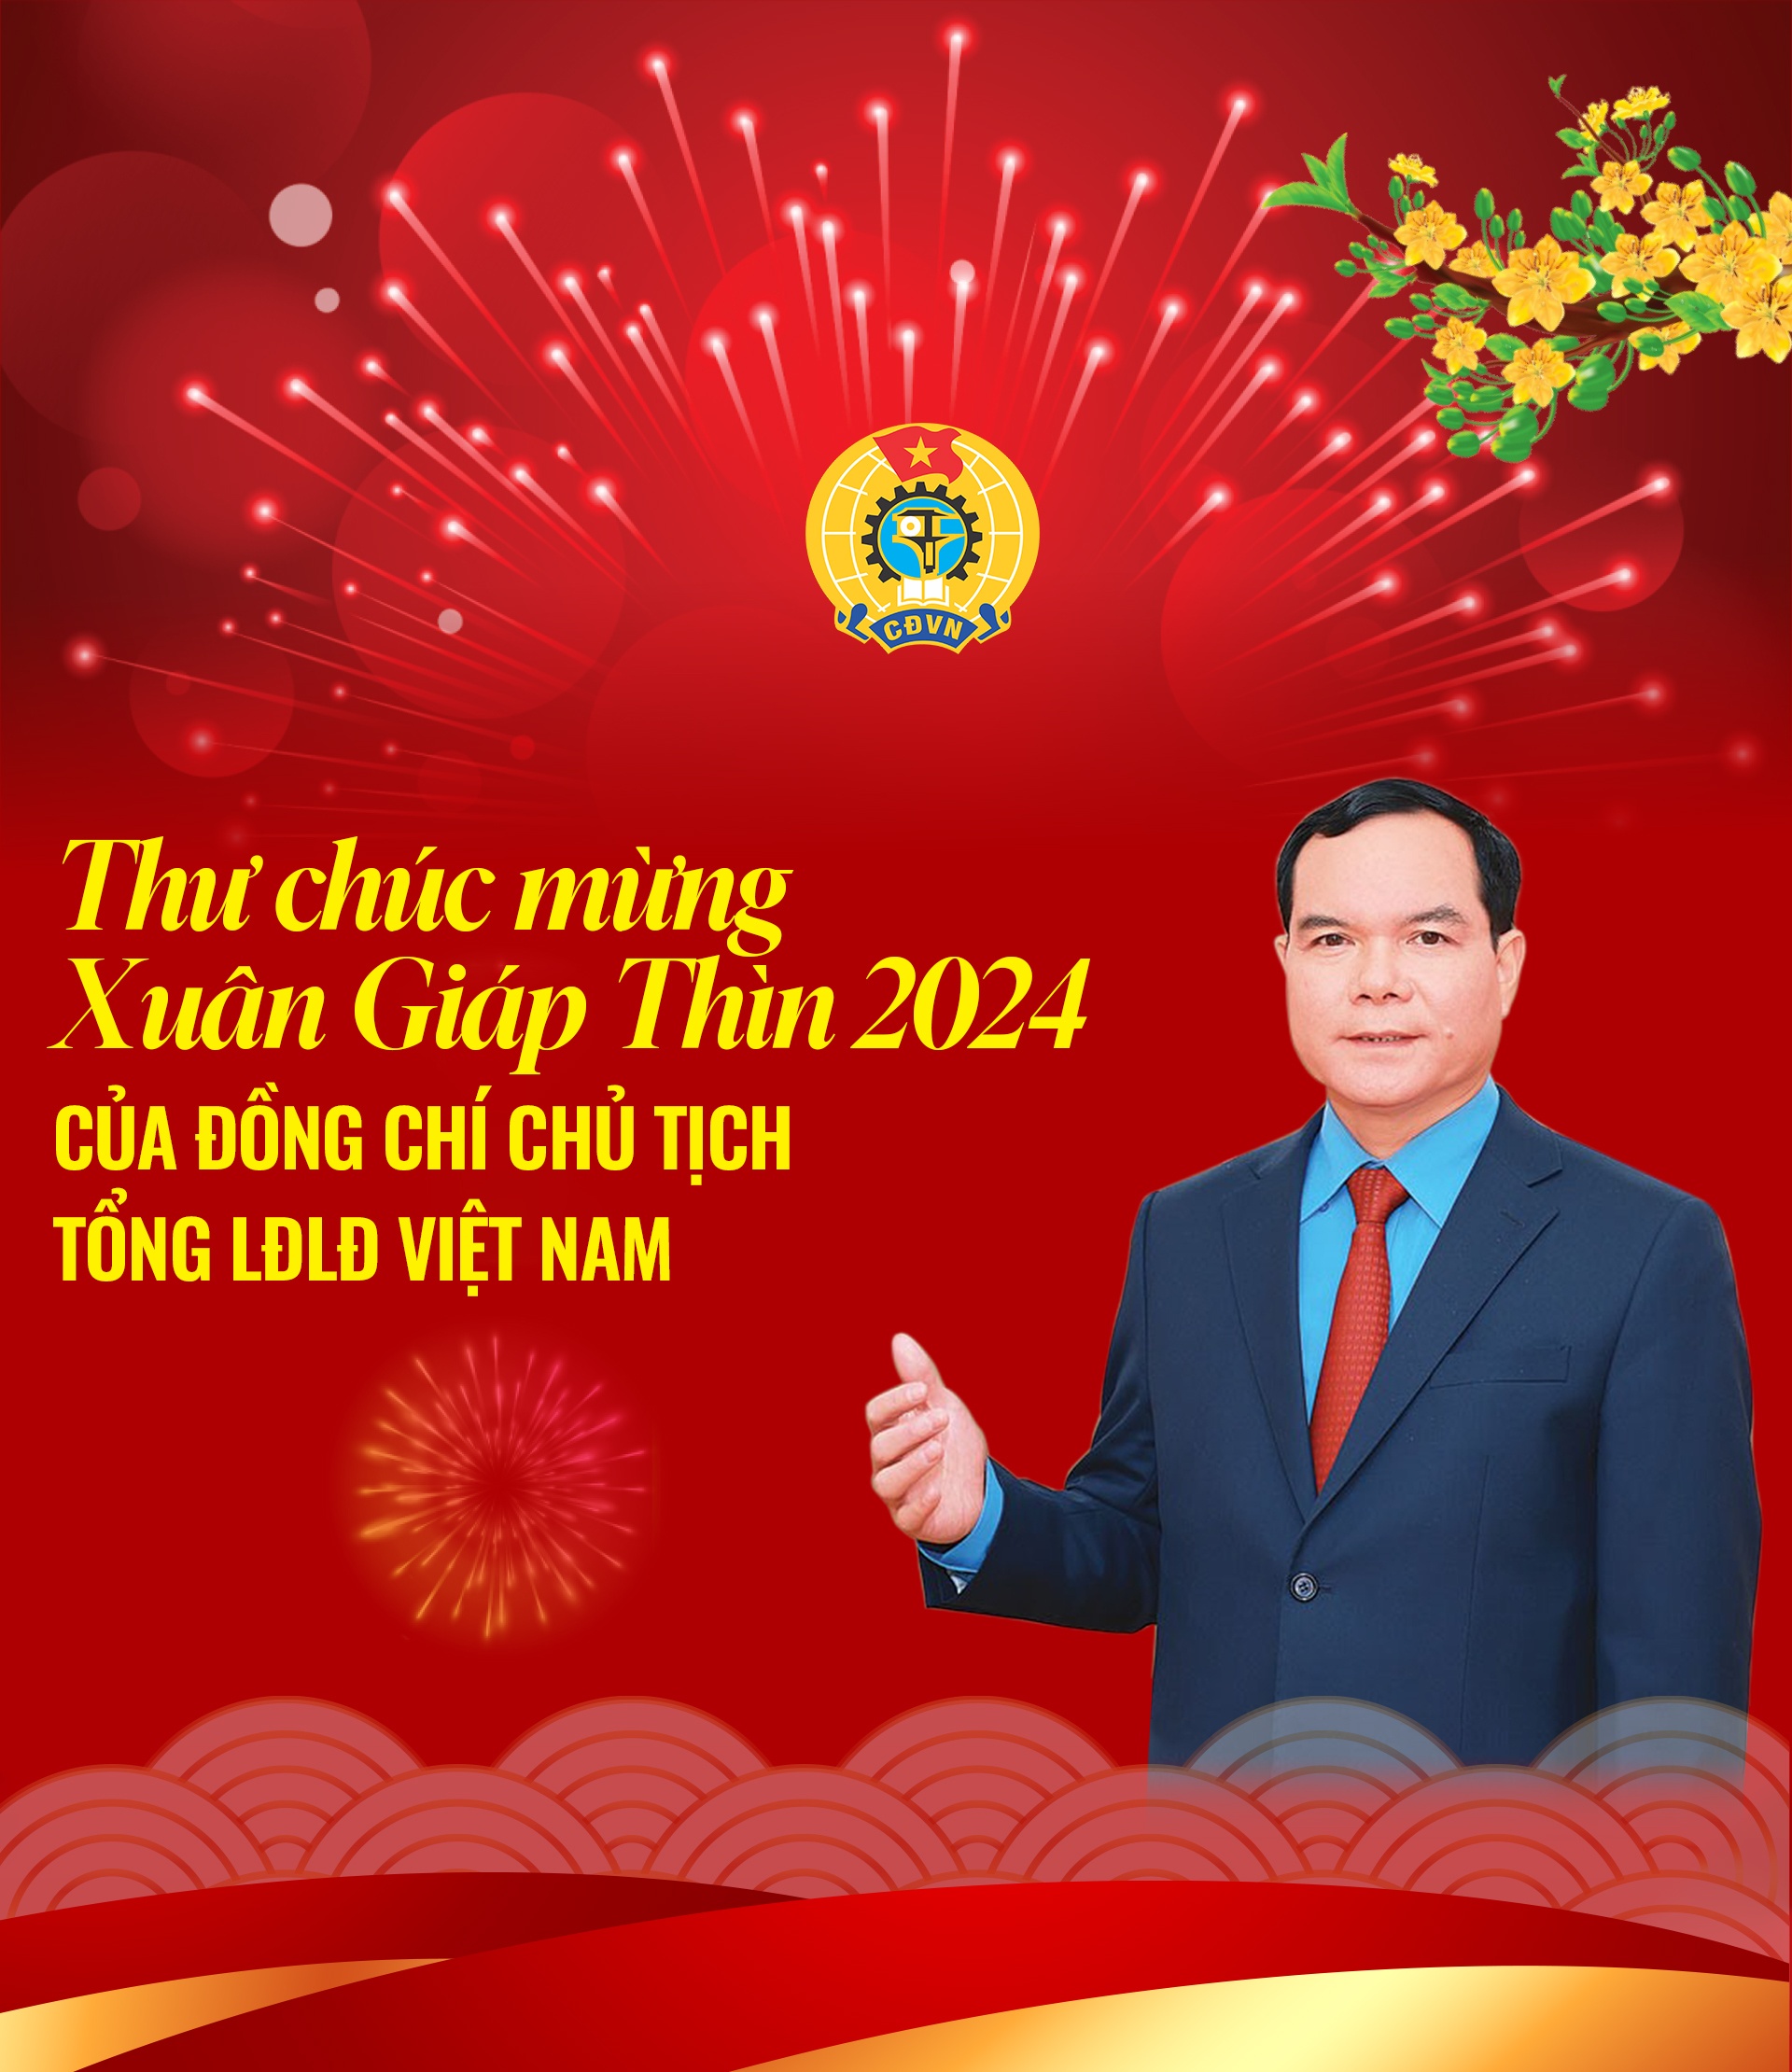 chu-tich-tong-ldld-viet-nam-gui-thu-chuc-mung-xuan-giap-thin-2024-20240205213728